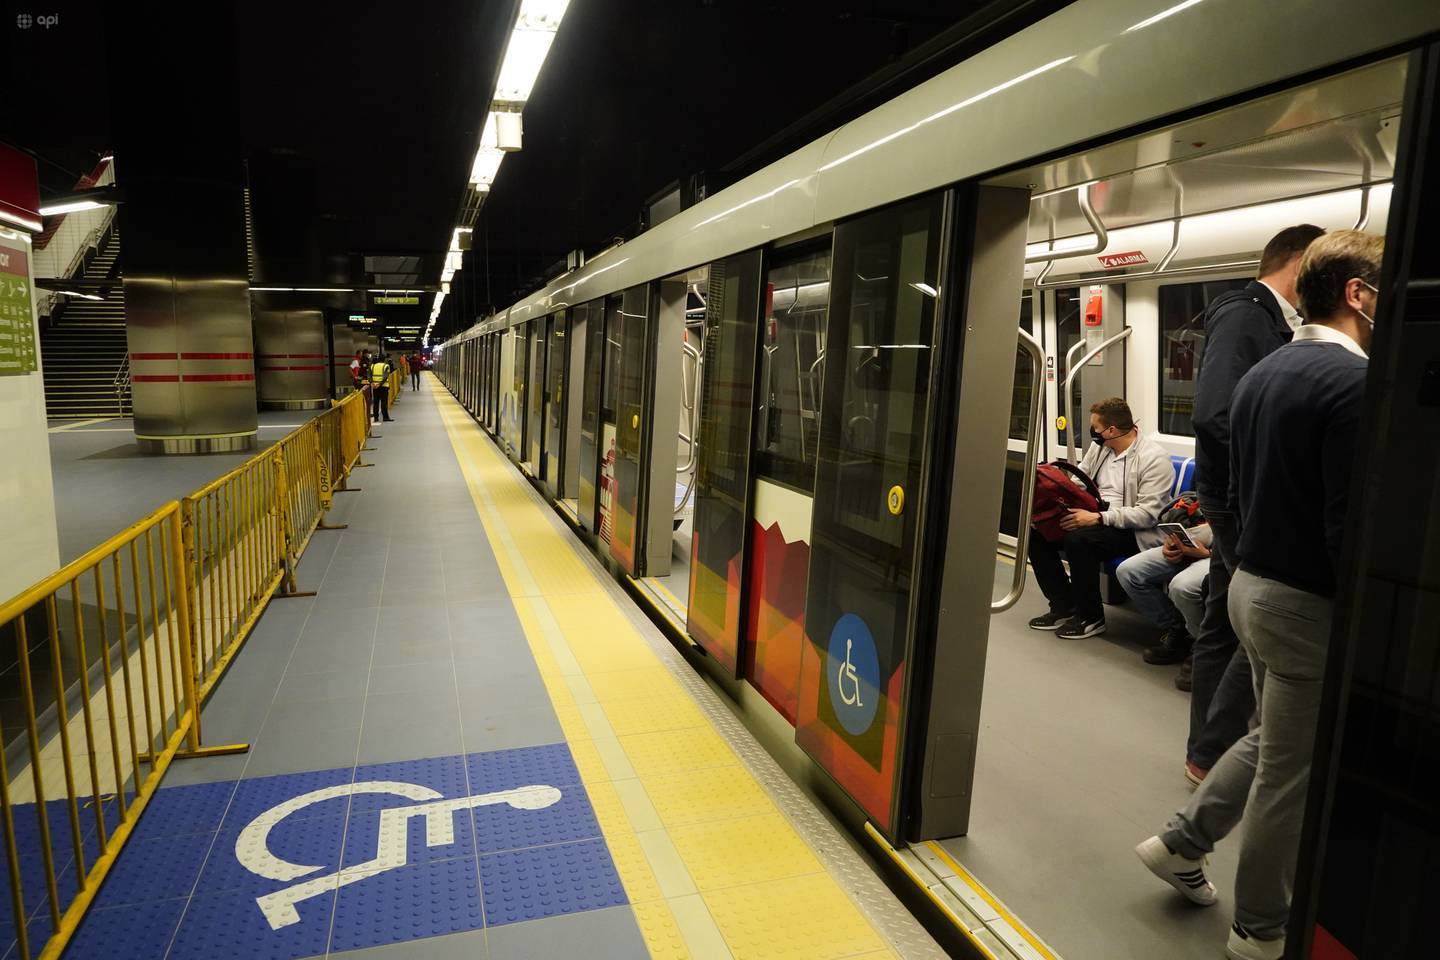 Quito 23 de enero 2023. Primer recorrido del metro de Quito con público en general, estación de El Labrador
API /DANIEL MOLINEROS